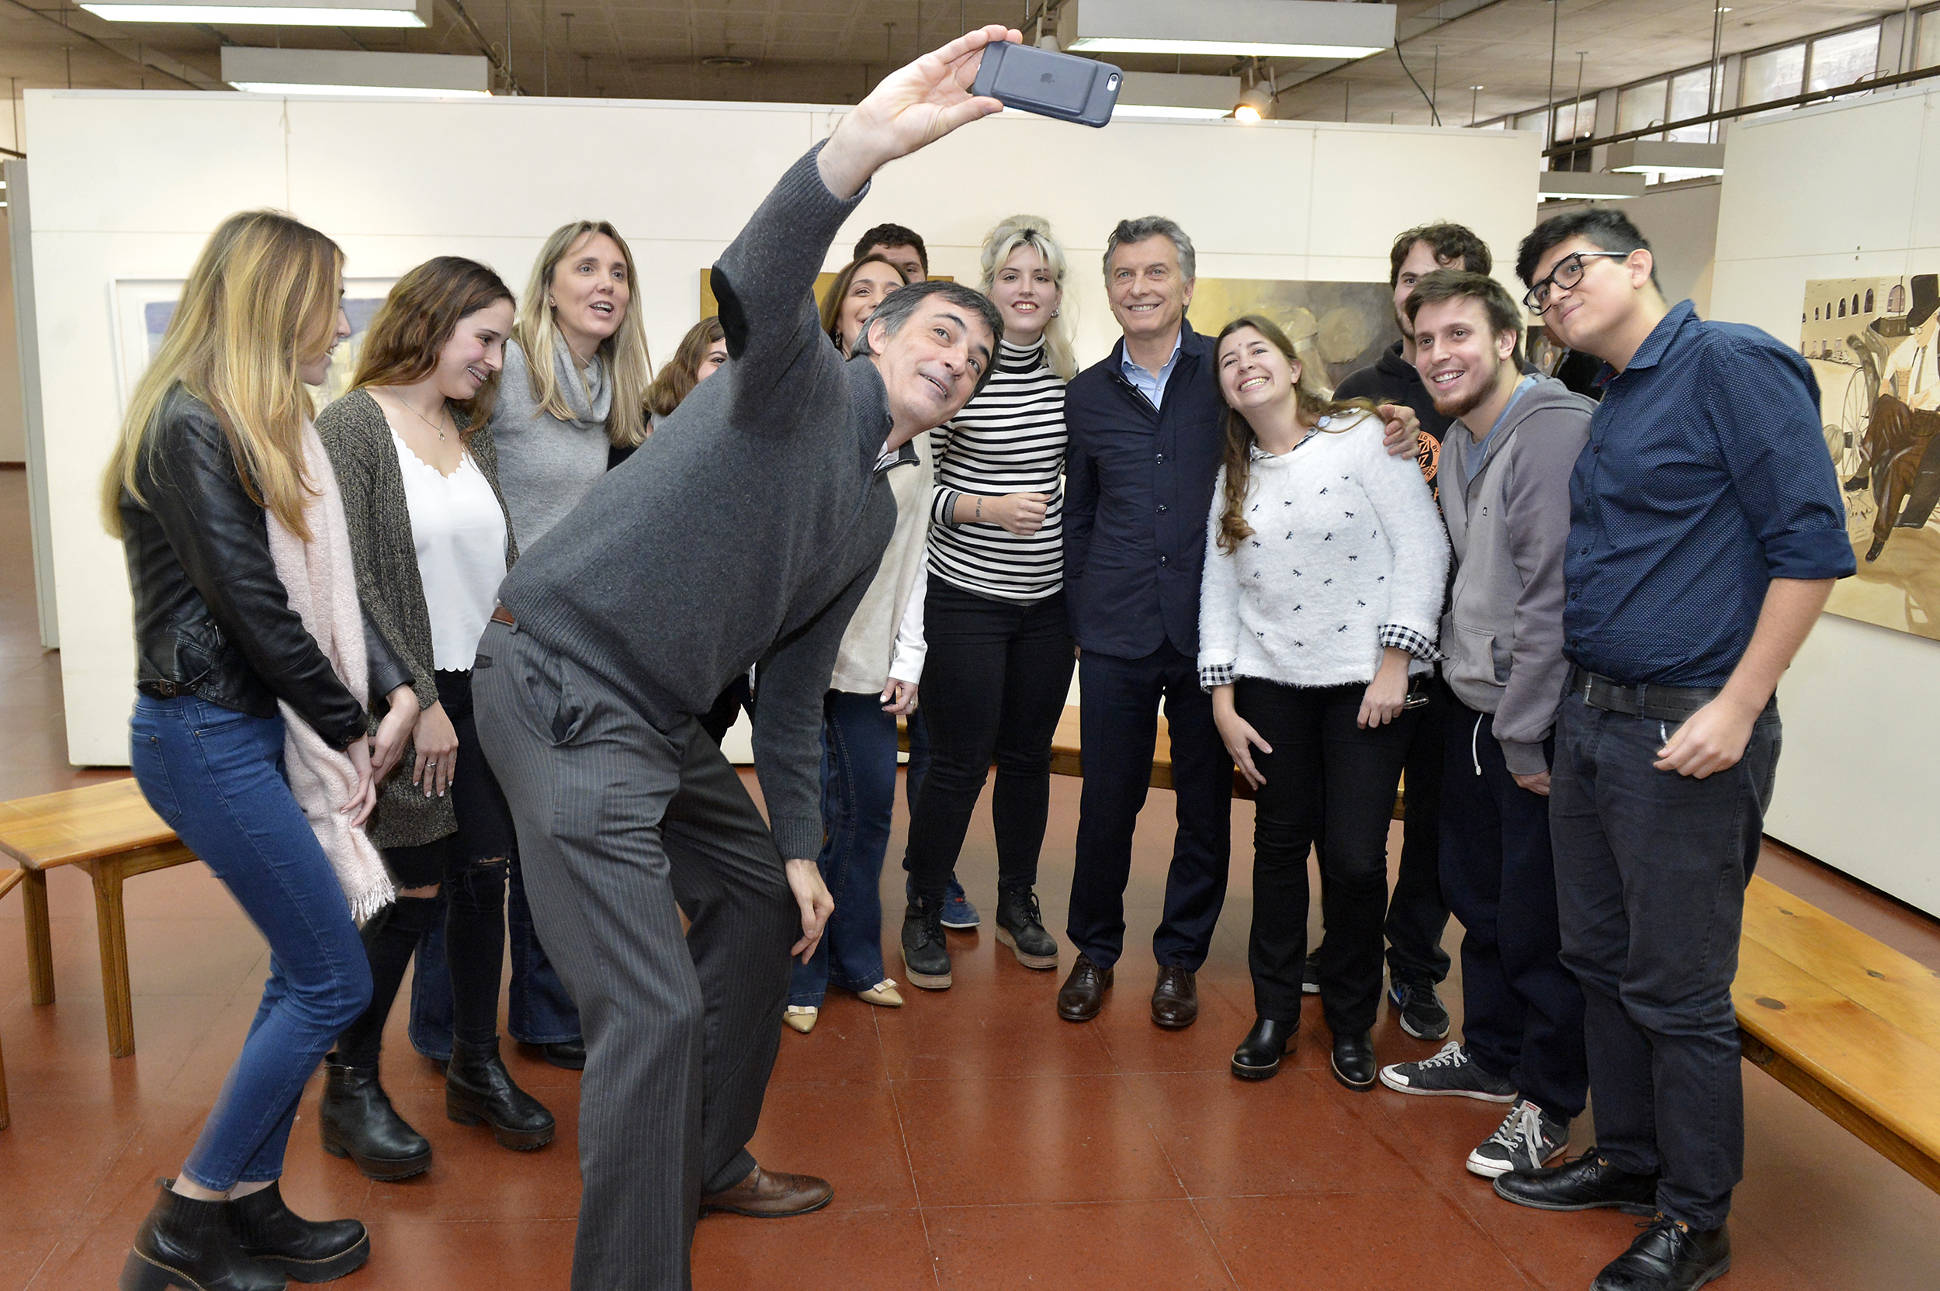 El Presidente se reunión con alumnos que utilizan el Boleto Estudiantil en provincia de Buenos Aires